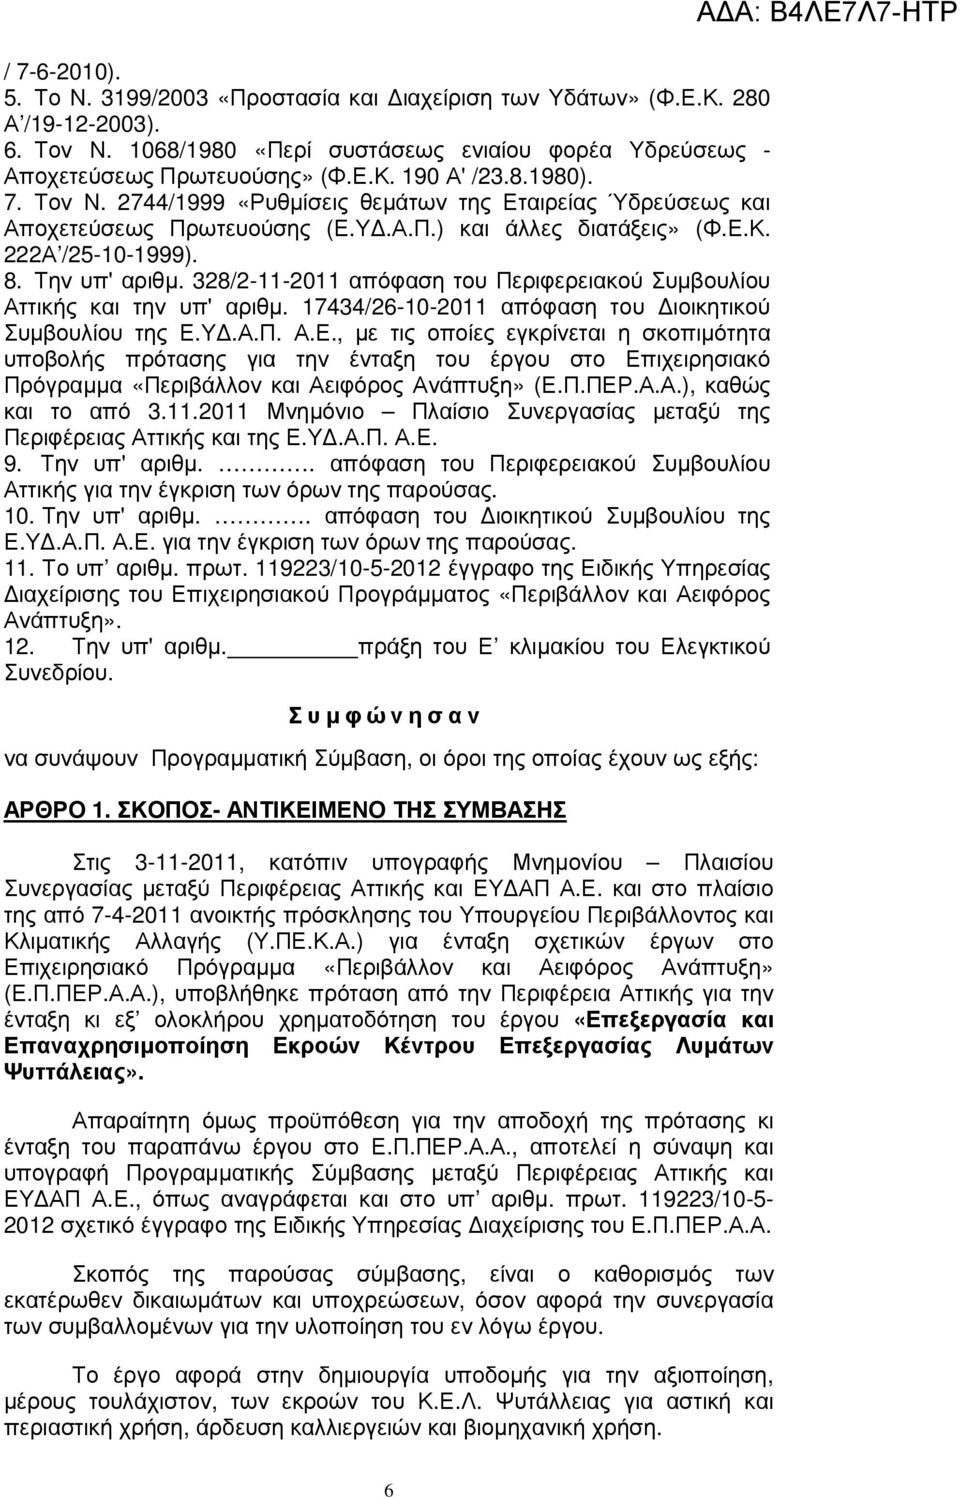 328/2-11-2011 απόφαση του Περιφερειακού Συµβουλίου Αττικής και την υπ' αριθµ. 17434/26-10-2011 απόφαση του ιοικητικού Συµβουλίου της Ε.